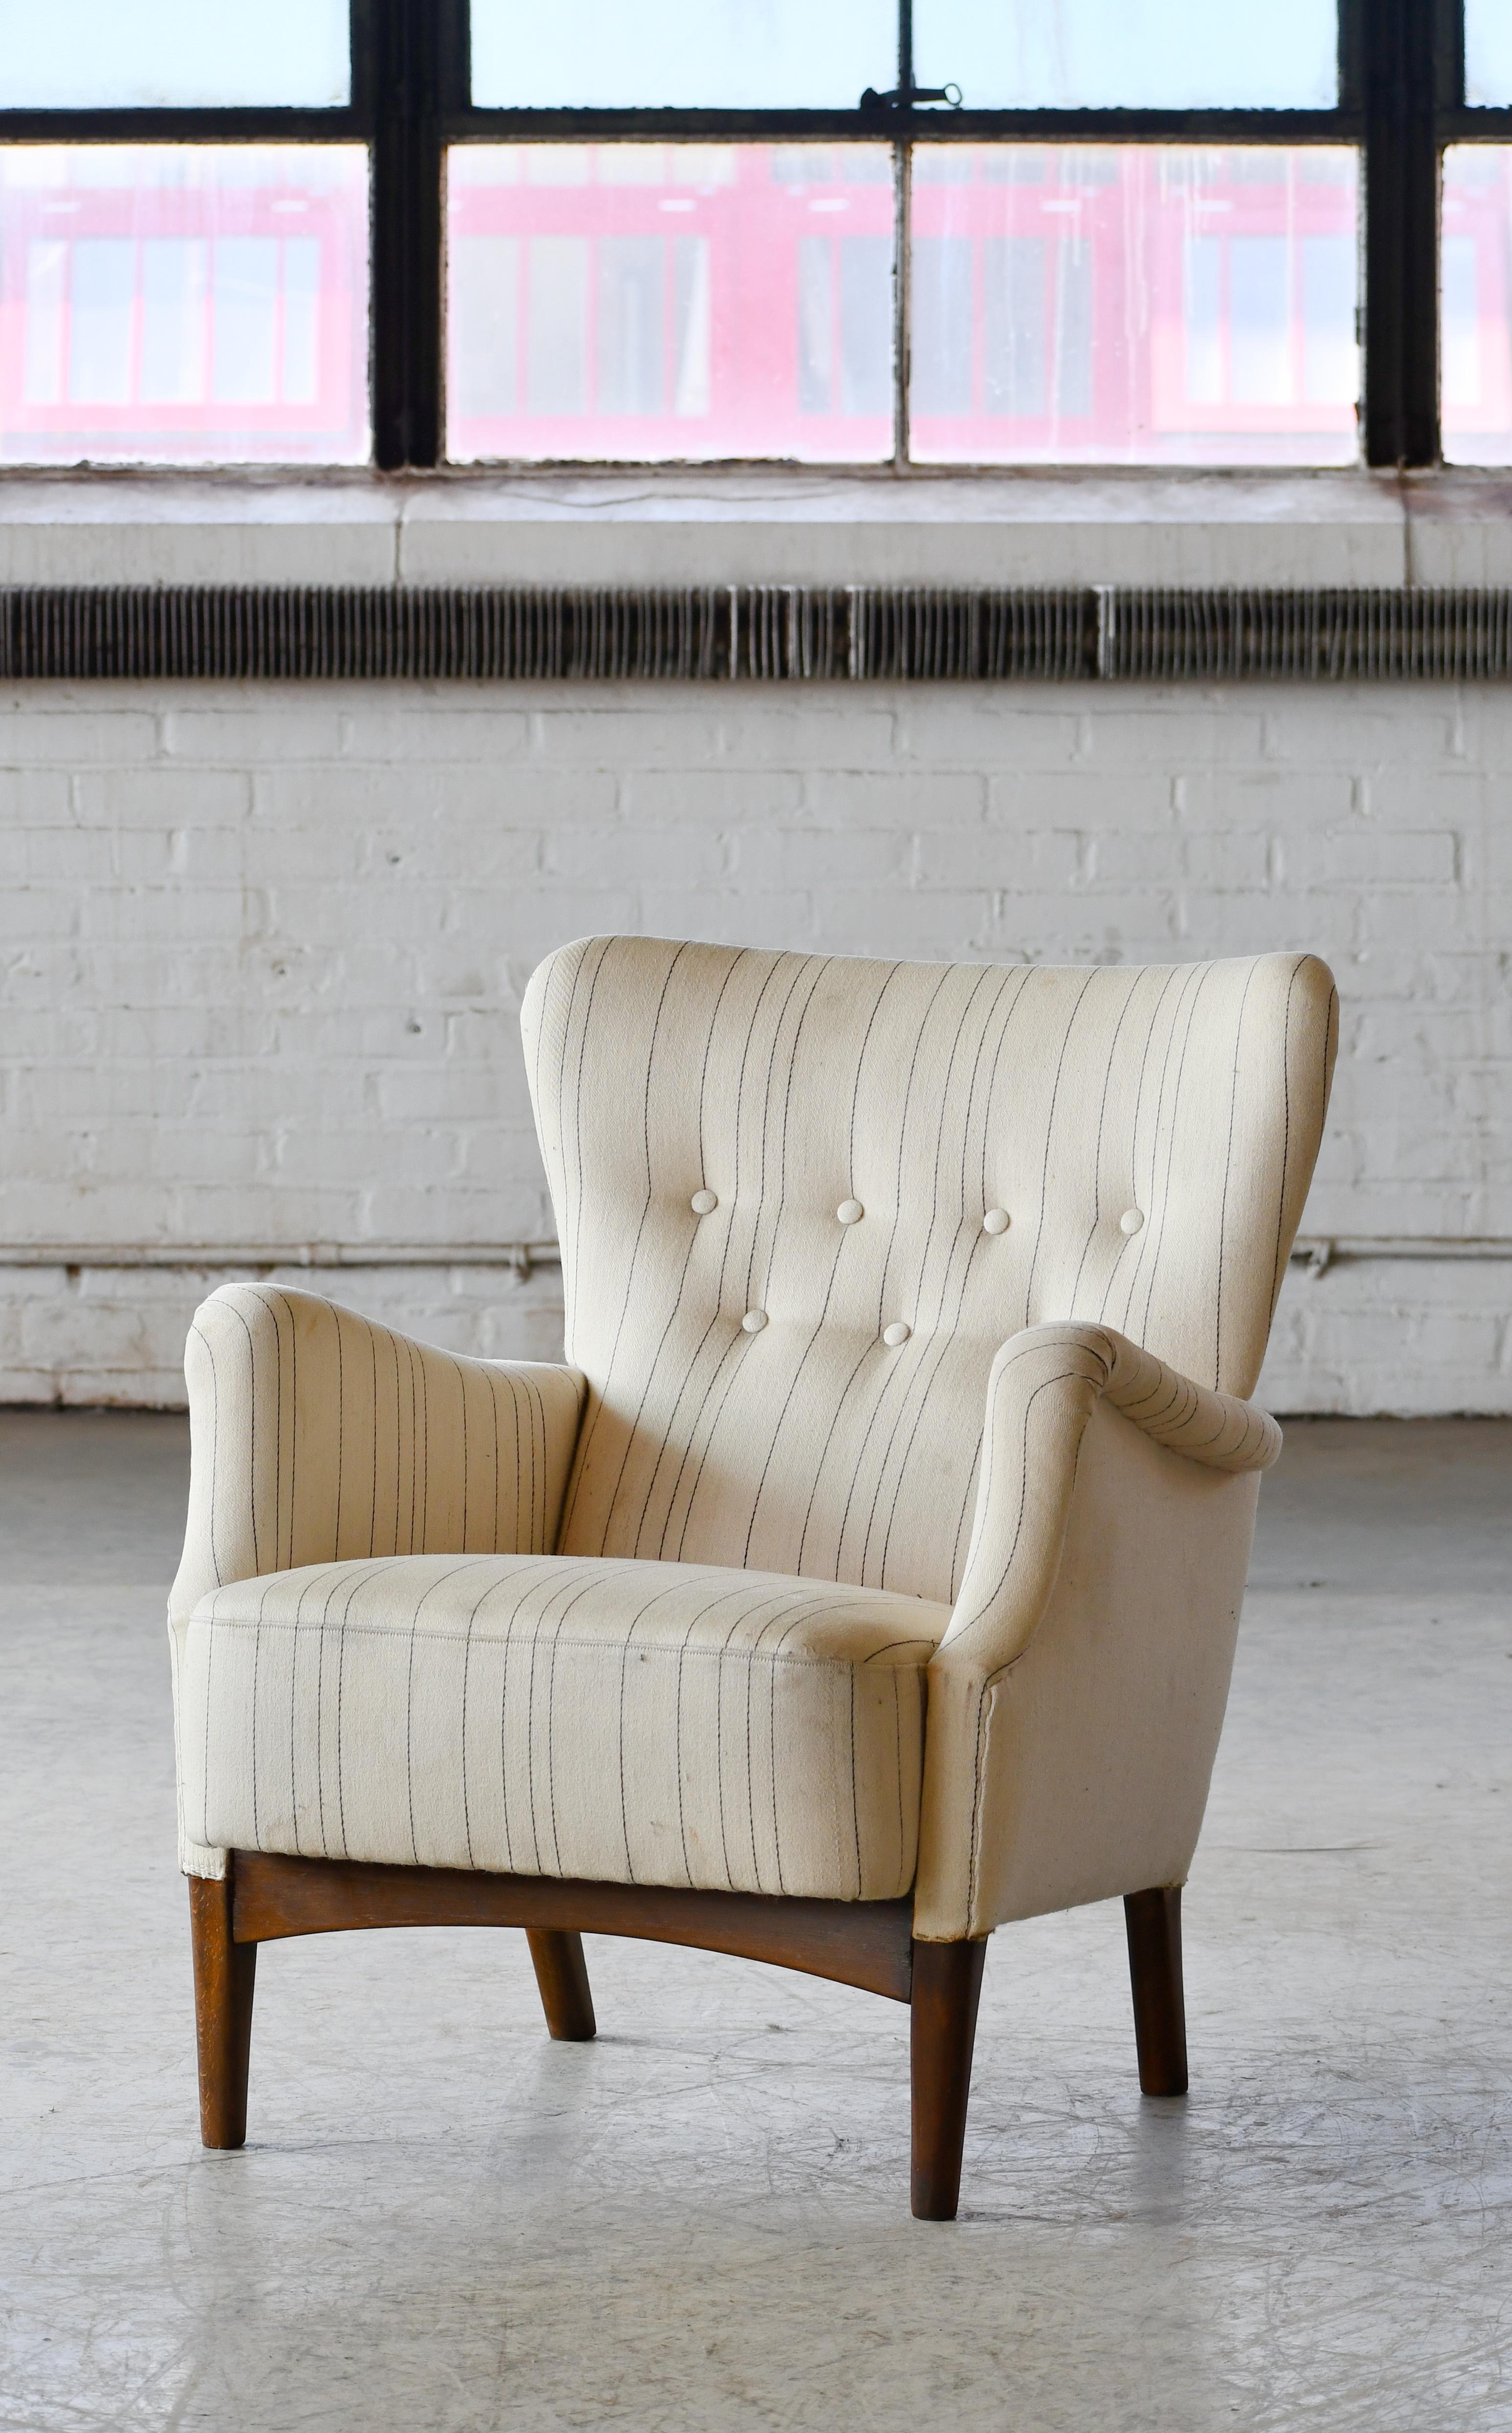 Schöner dänischer Sessel aus den 1950er Jahren von Fritz Hansen. Sehr elegant, mit einer skulpturalen, organischen Form und harmonischen Proportionen und Abmessungen, die ihn vielseitig einsetzbar machen und sich gut für die heutigen städtischen